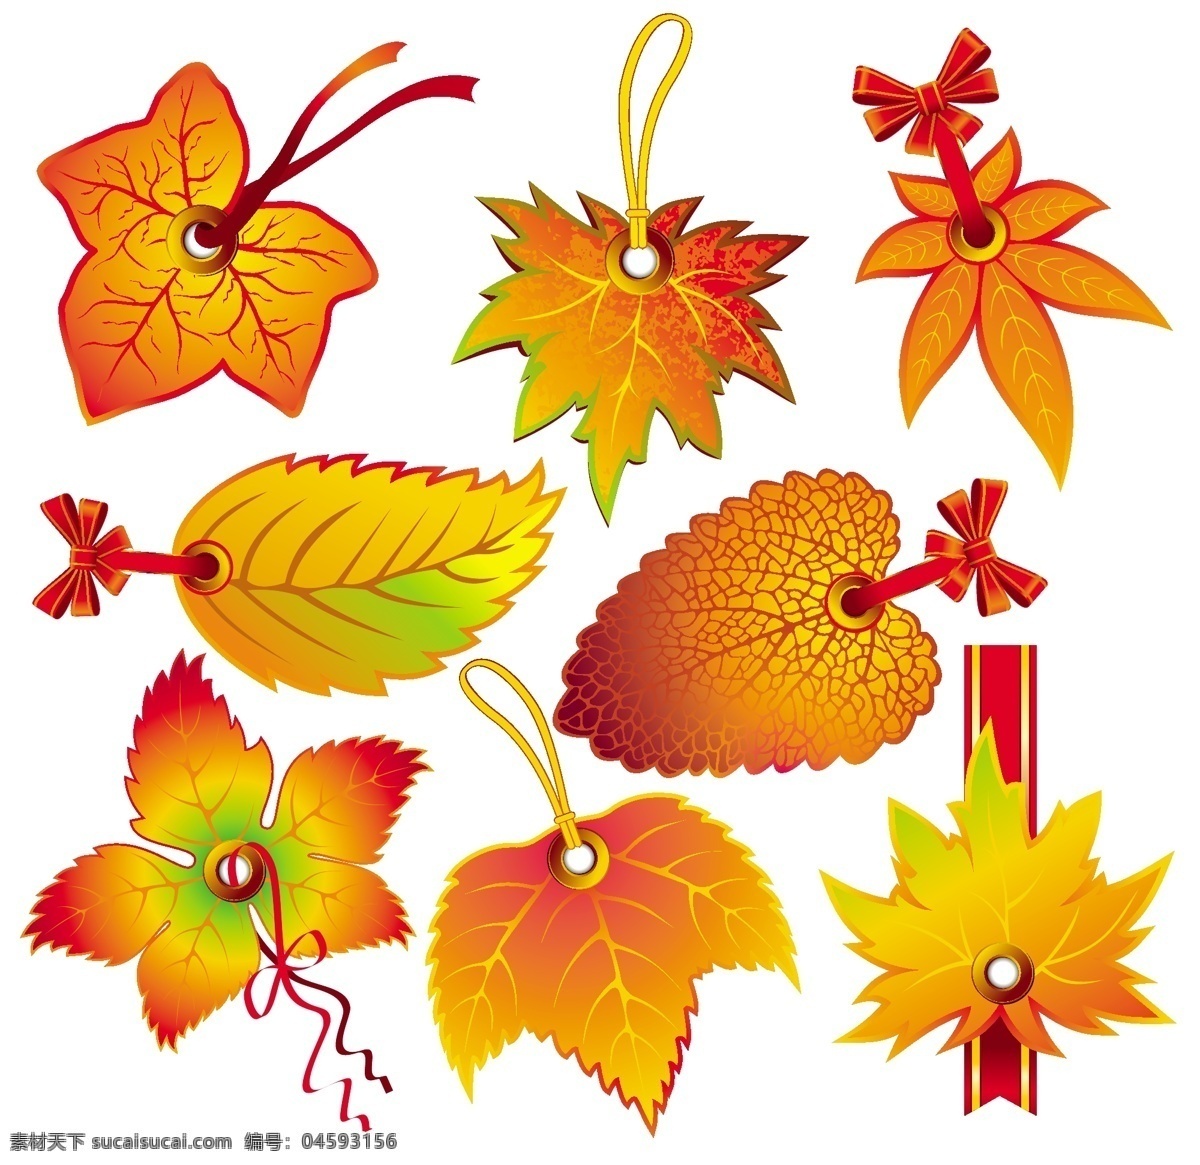 美丽 叶子 标签 缎带 扣 秋天 秋天的落叶 树叶 水滴 图案精美 枫叶红绳 脉 矢量图 日常生活